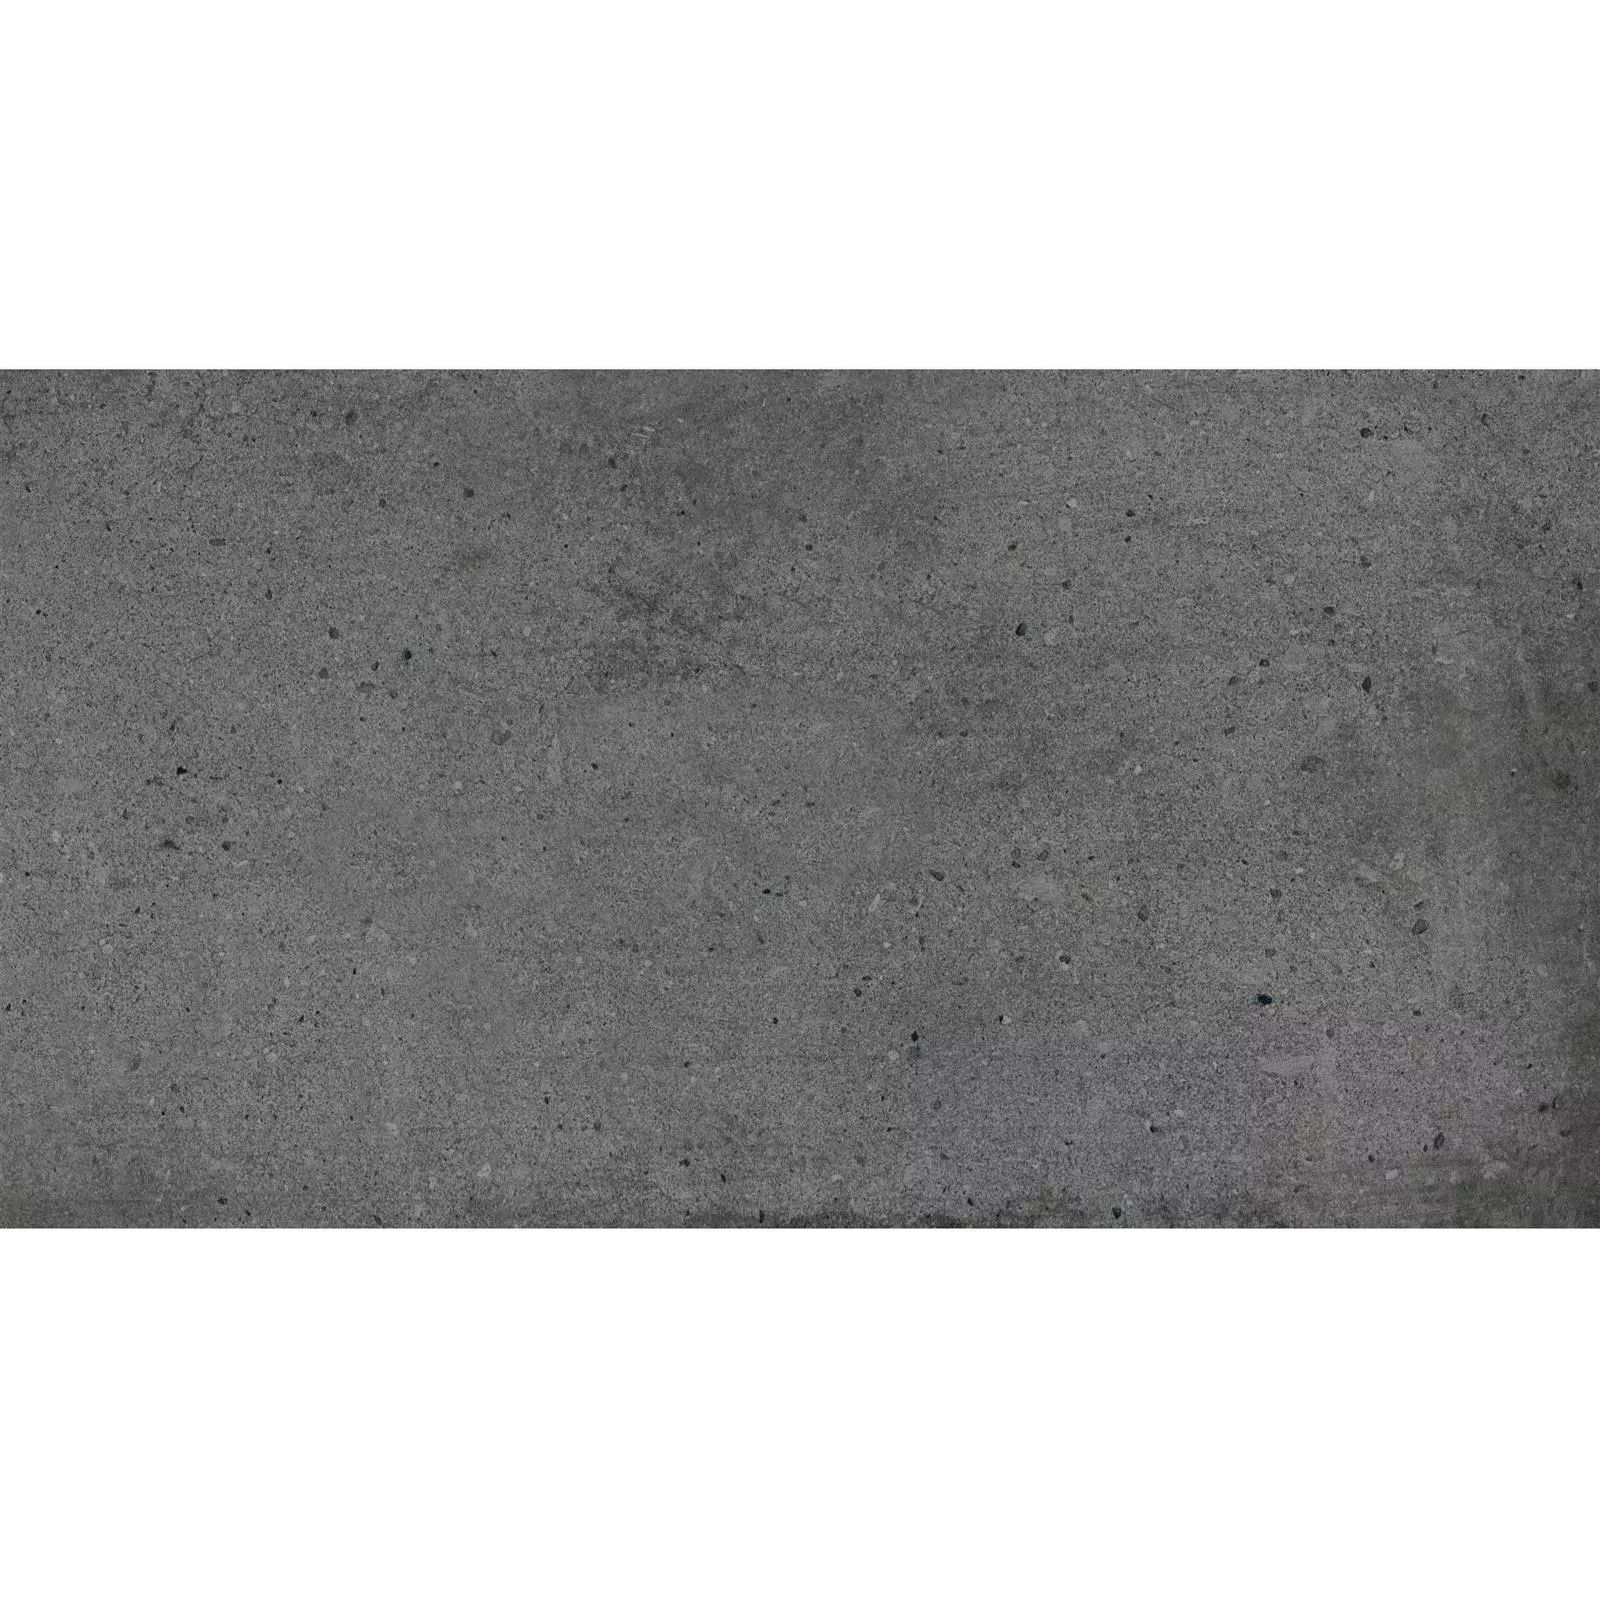 Πρότυπο Πλακάκια Δαπέδου Freeland Πέτρινη Όψη R10/B Ανθρακίτης 30x60cm